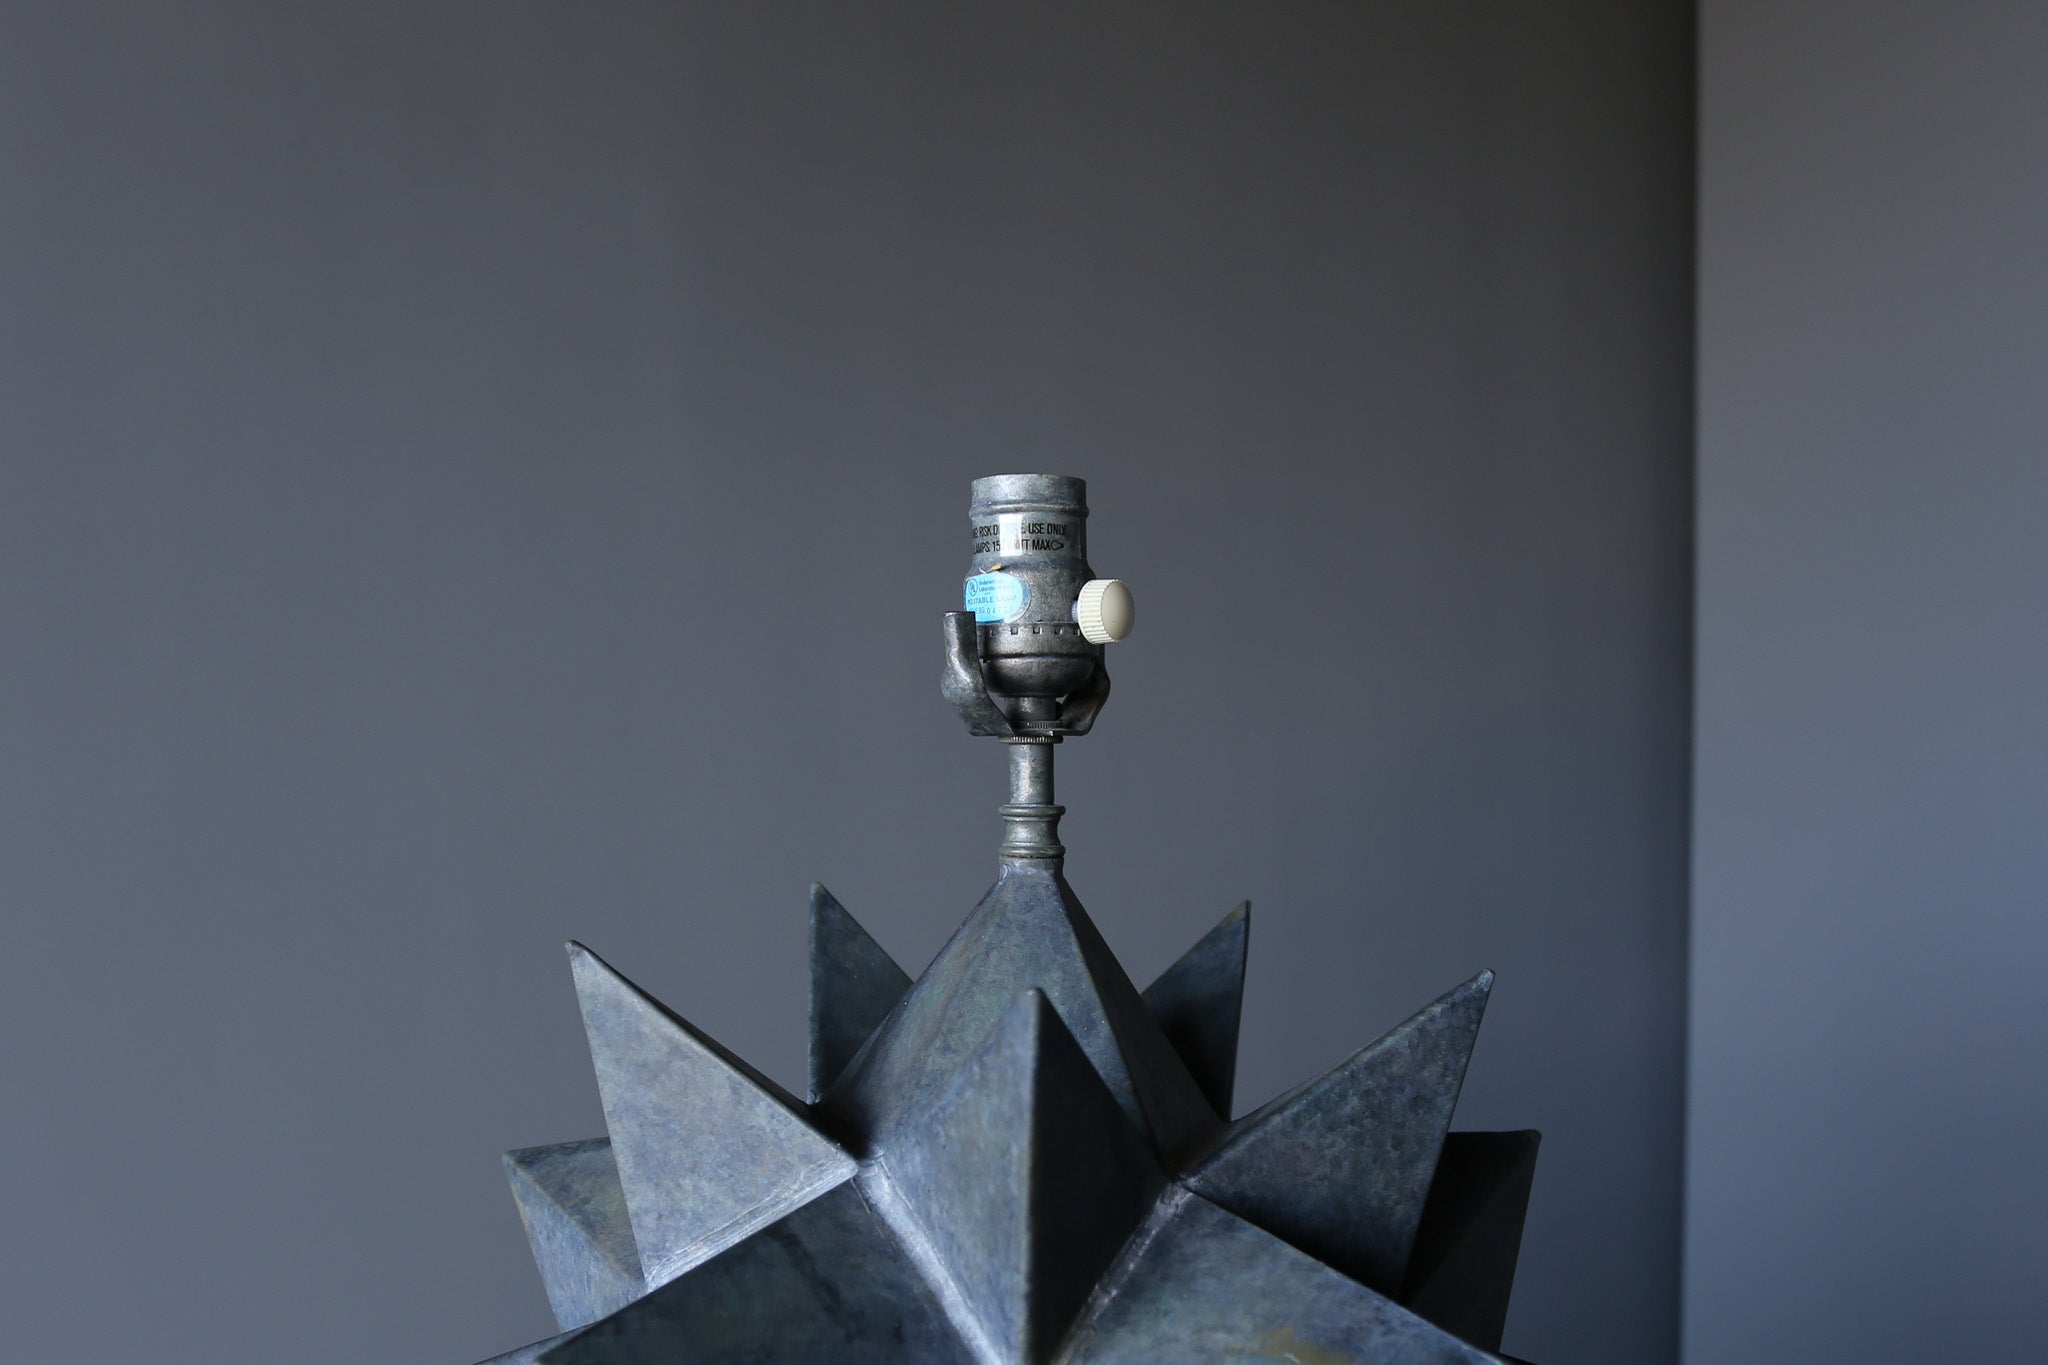 Sculptural Patinated Metal Table Lamp, c.1975